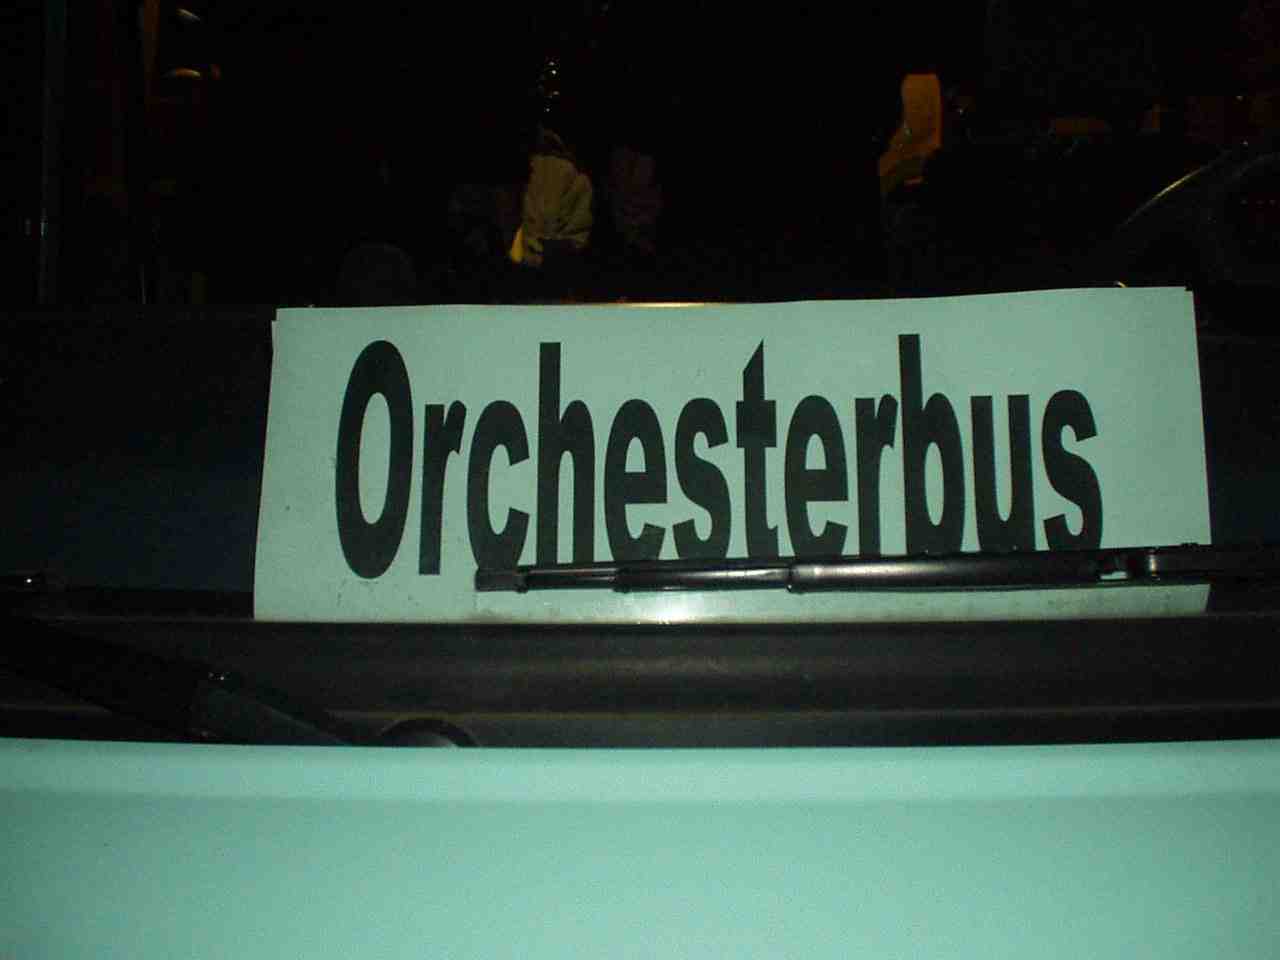 Orchesterbus